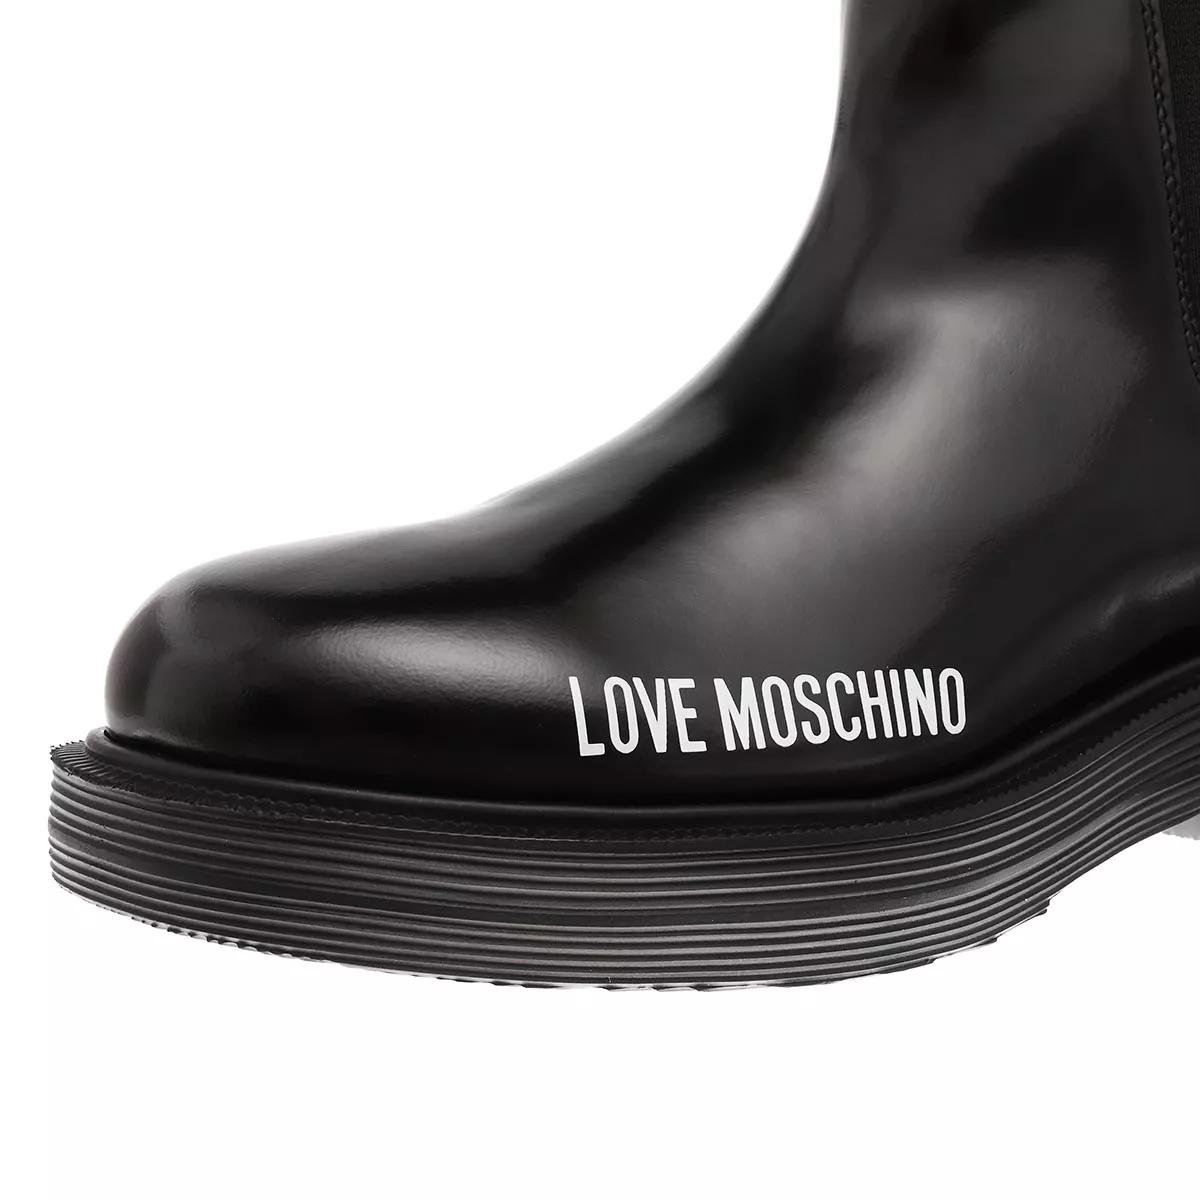 Love Moschino Boots & Stiefeletten - Sca.Nod.City40 Vit.Abrasivato - Gr. 39 (EU) - in Schwarz - für Damen von Love Moschino